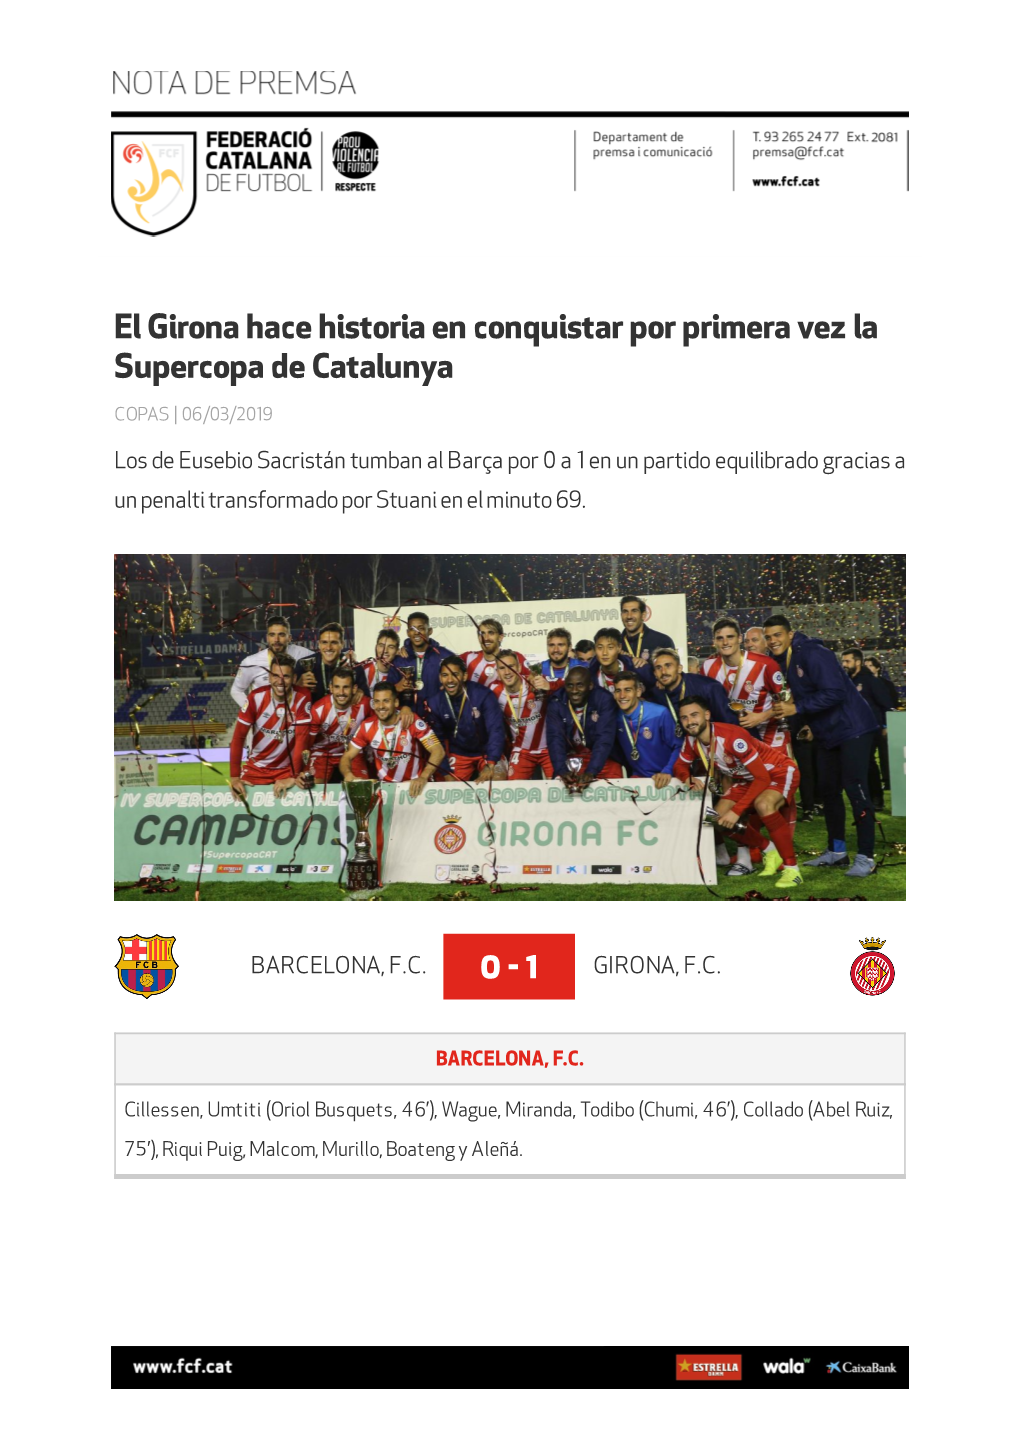 El Girona Hace Historia En Conquistar Por Primera Vez La Supercopa De Catalunya